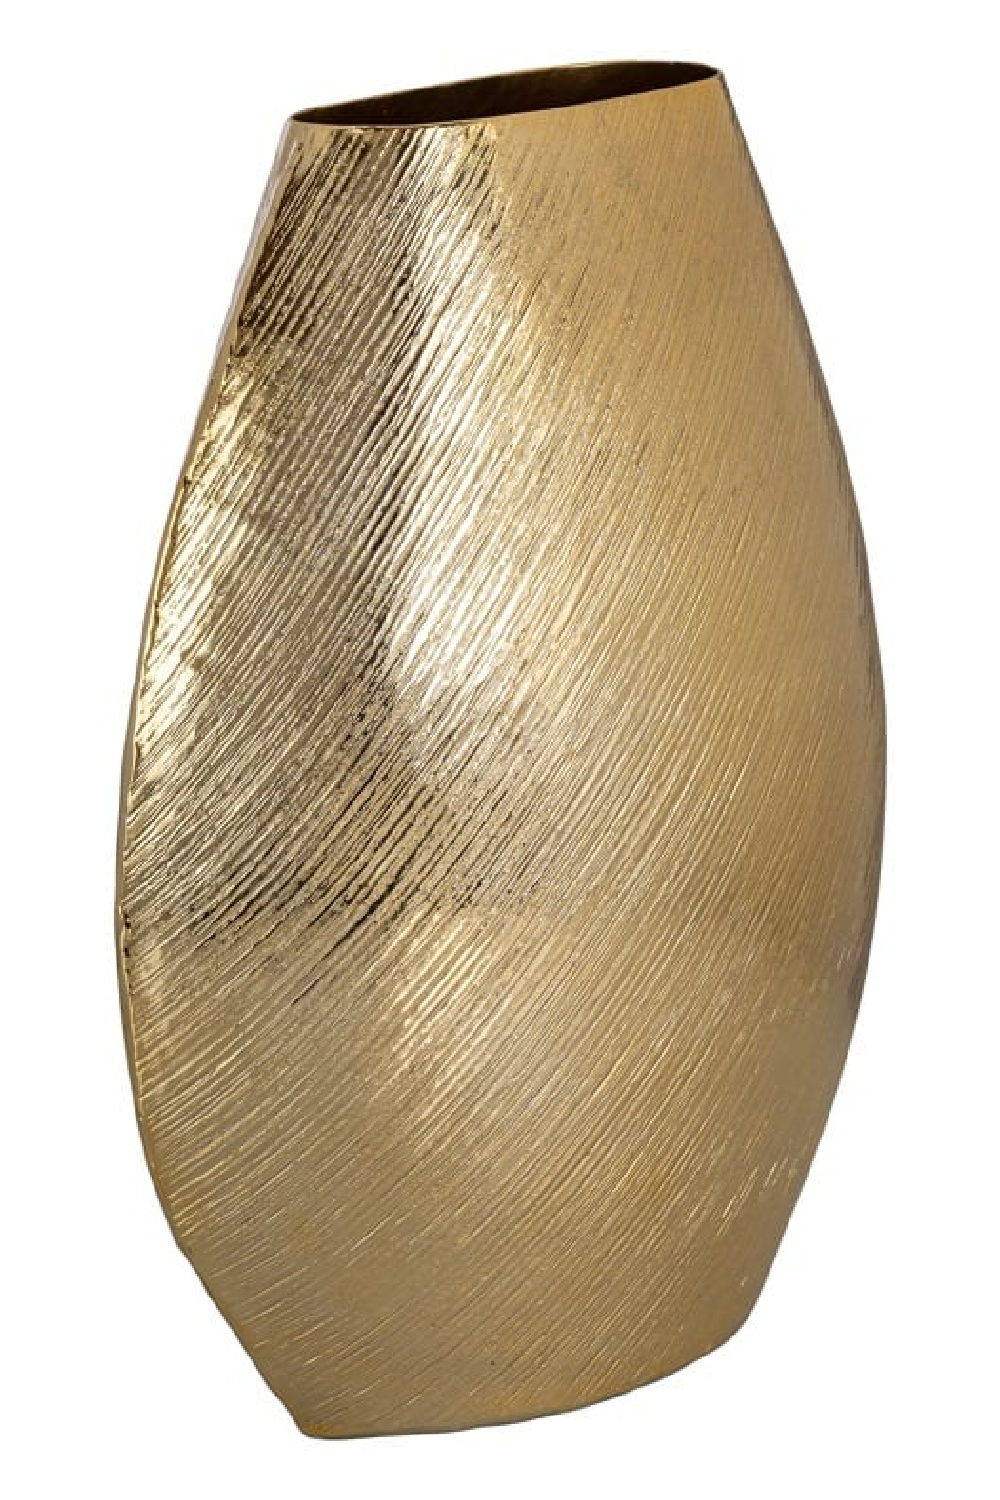 Gold Aluminium Vase L | OROA Evey | Oroa.com